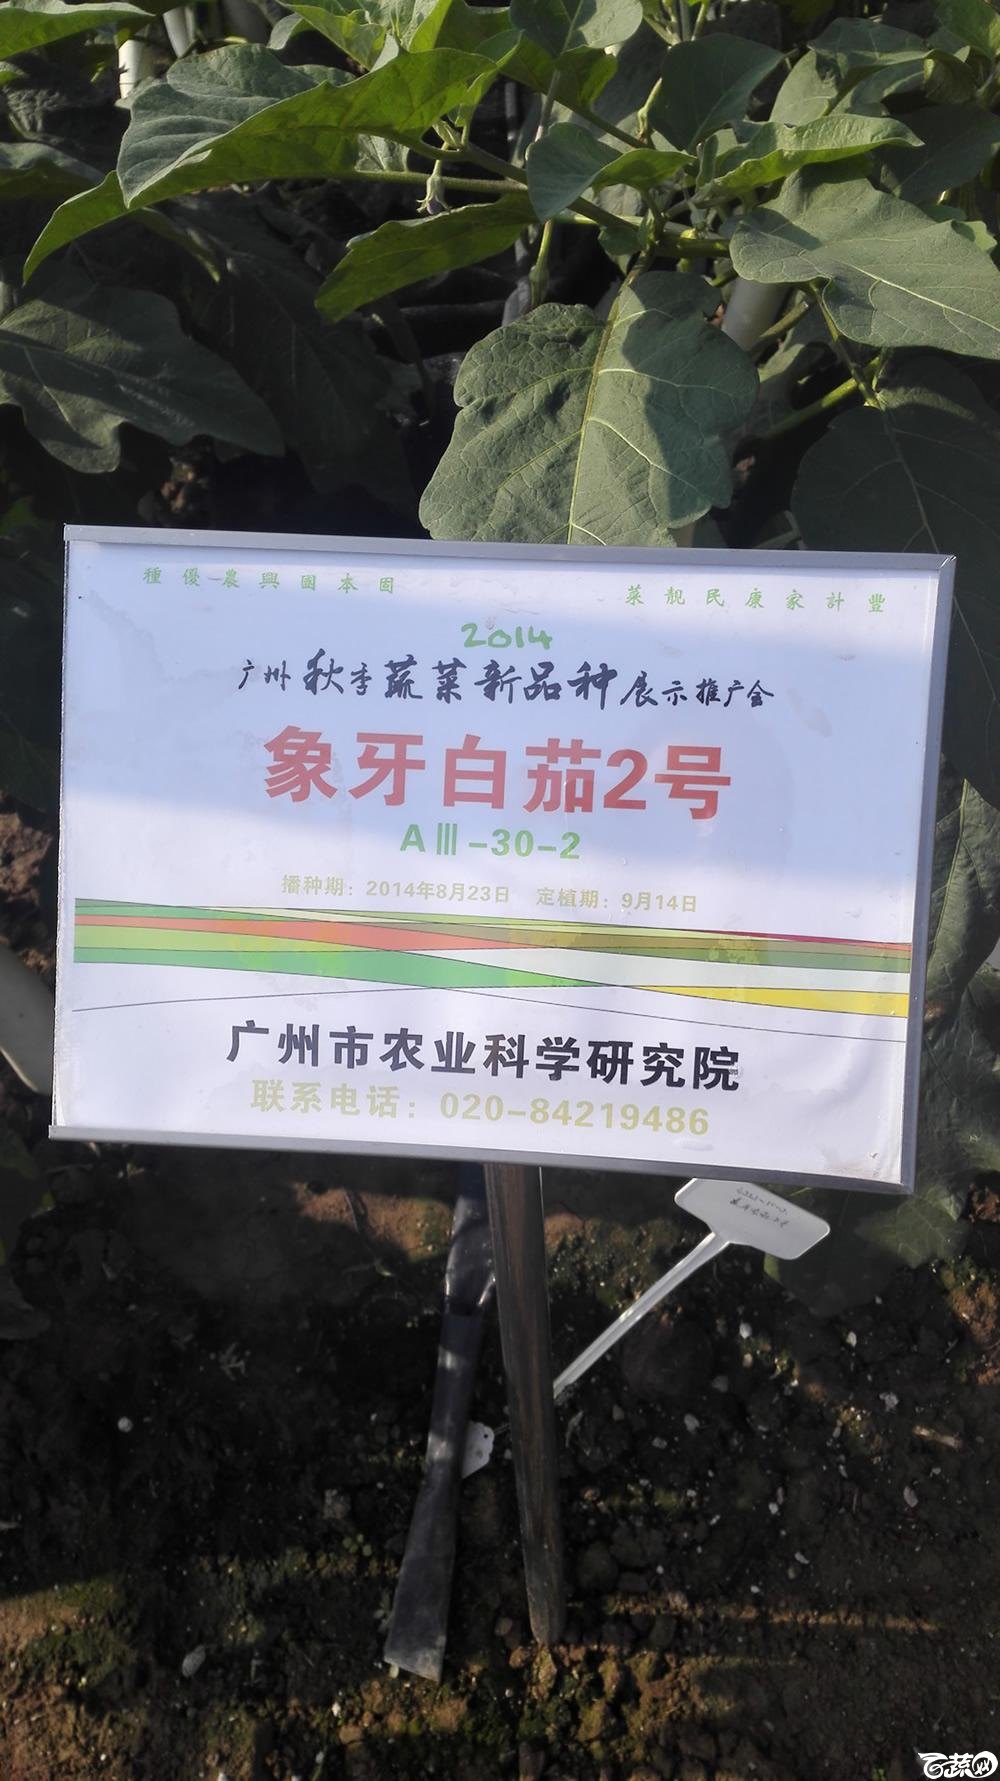 2014年12月10号广州市农科院南沙秋季蔬菜新品种展示会 茄子_021.jpg